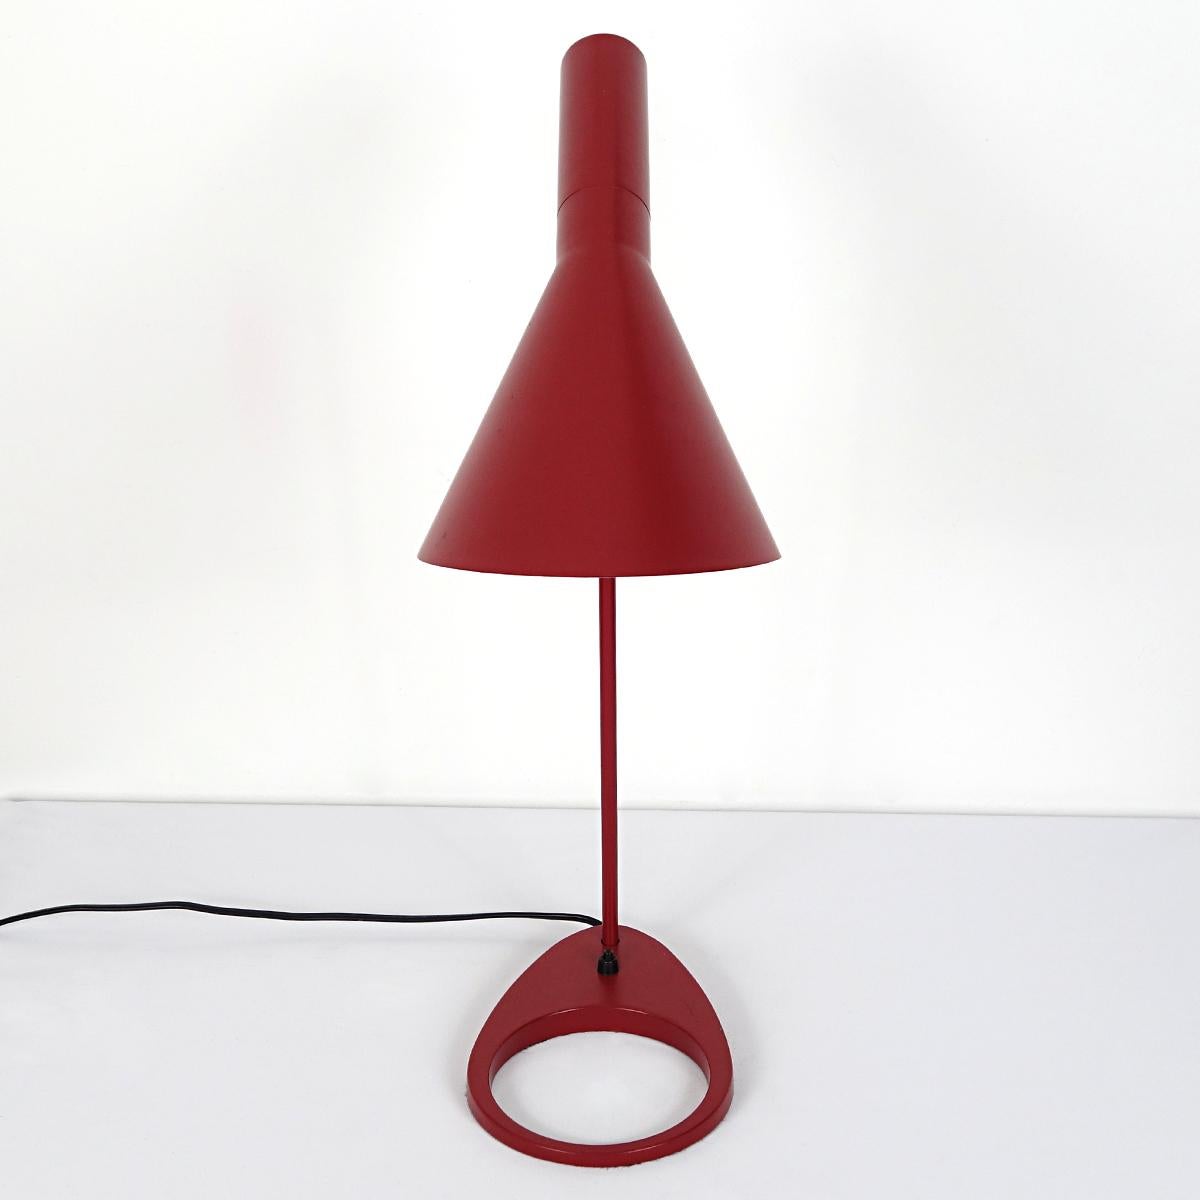 Danish Mid-Century Modern Table Lamp AJ by Arne Jacobsen for Louis Poulsen